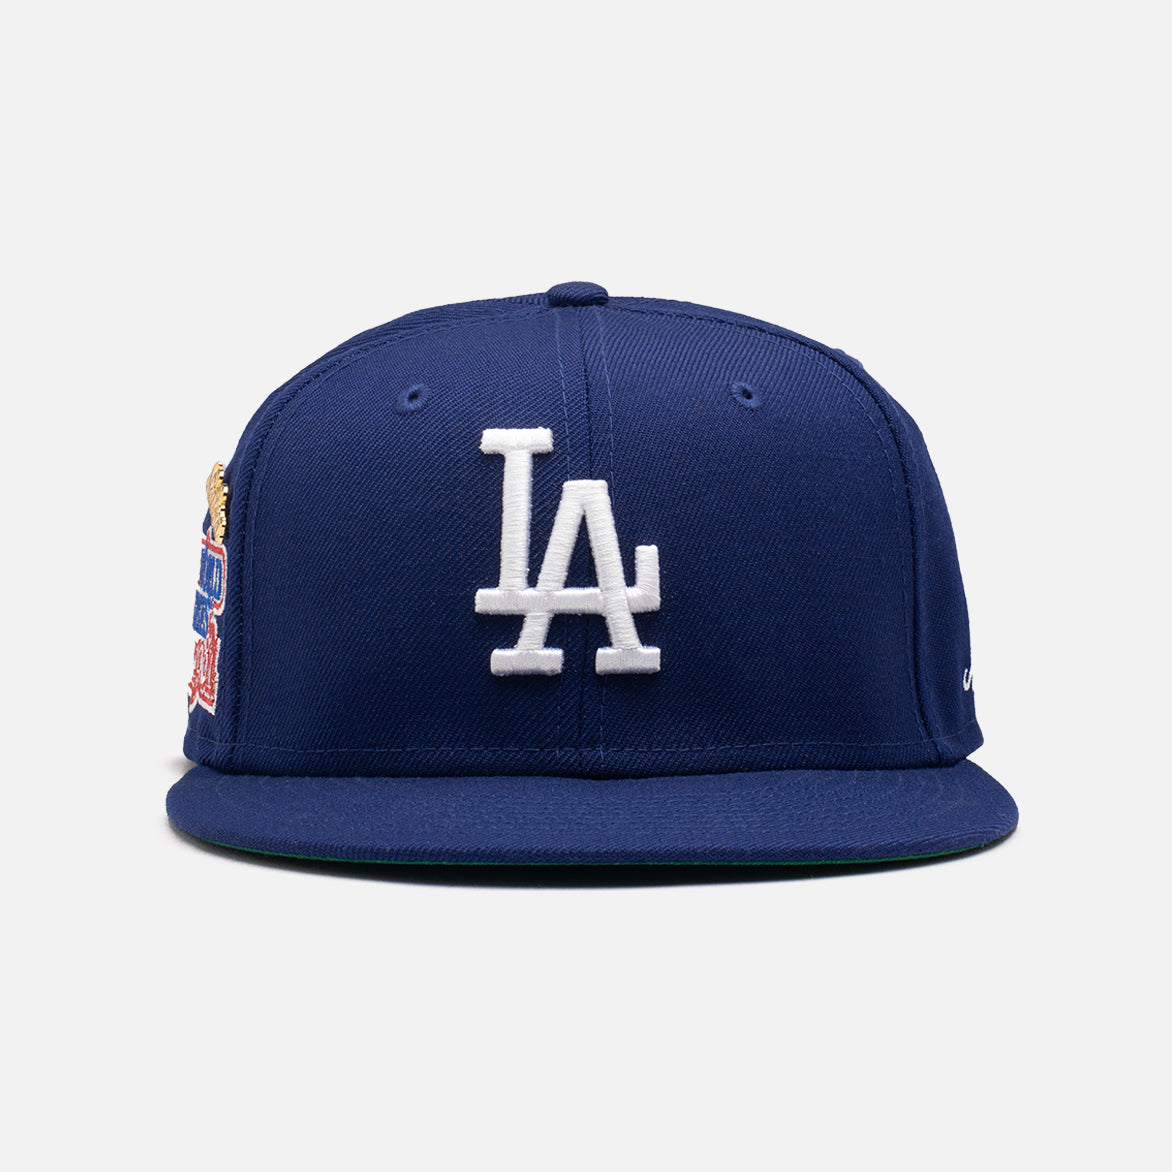 Lids, Accessories, La Dodgers Hat Size 7 4